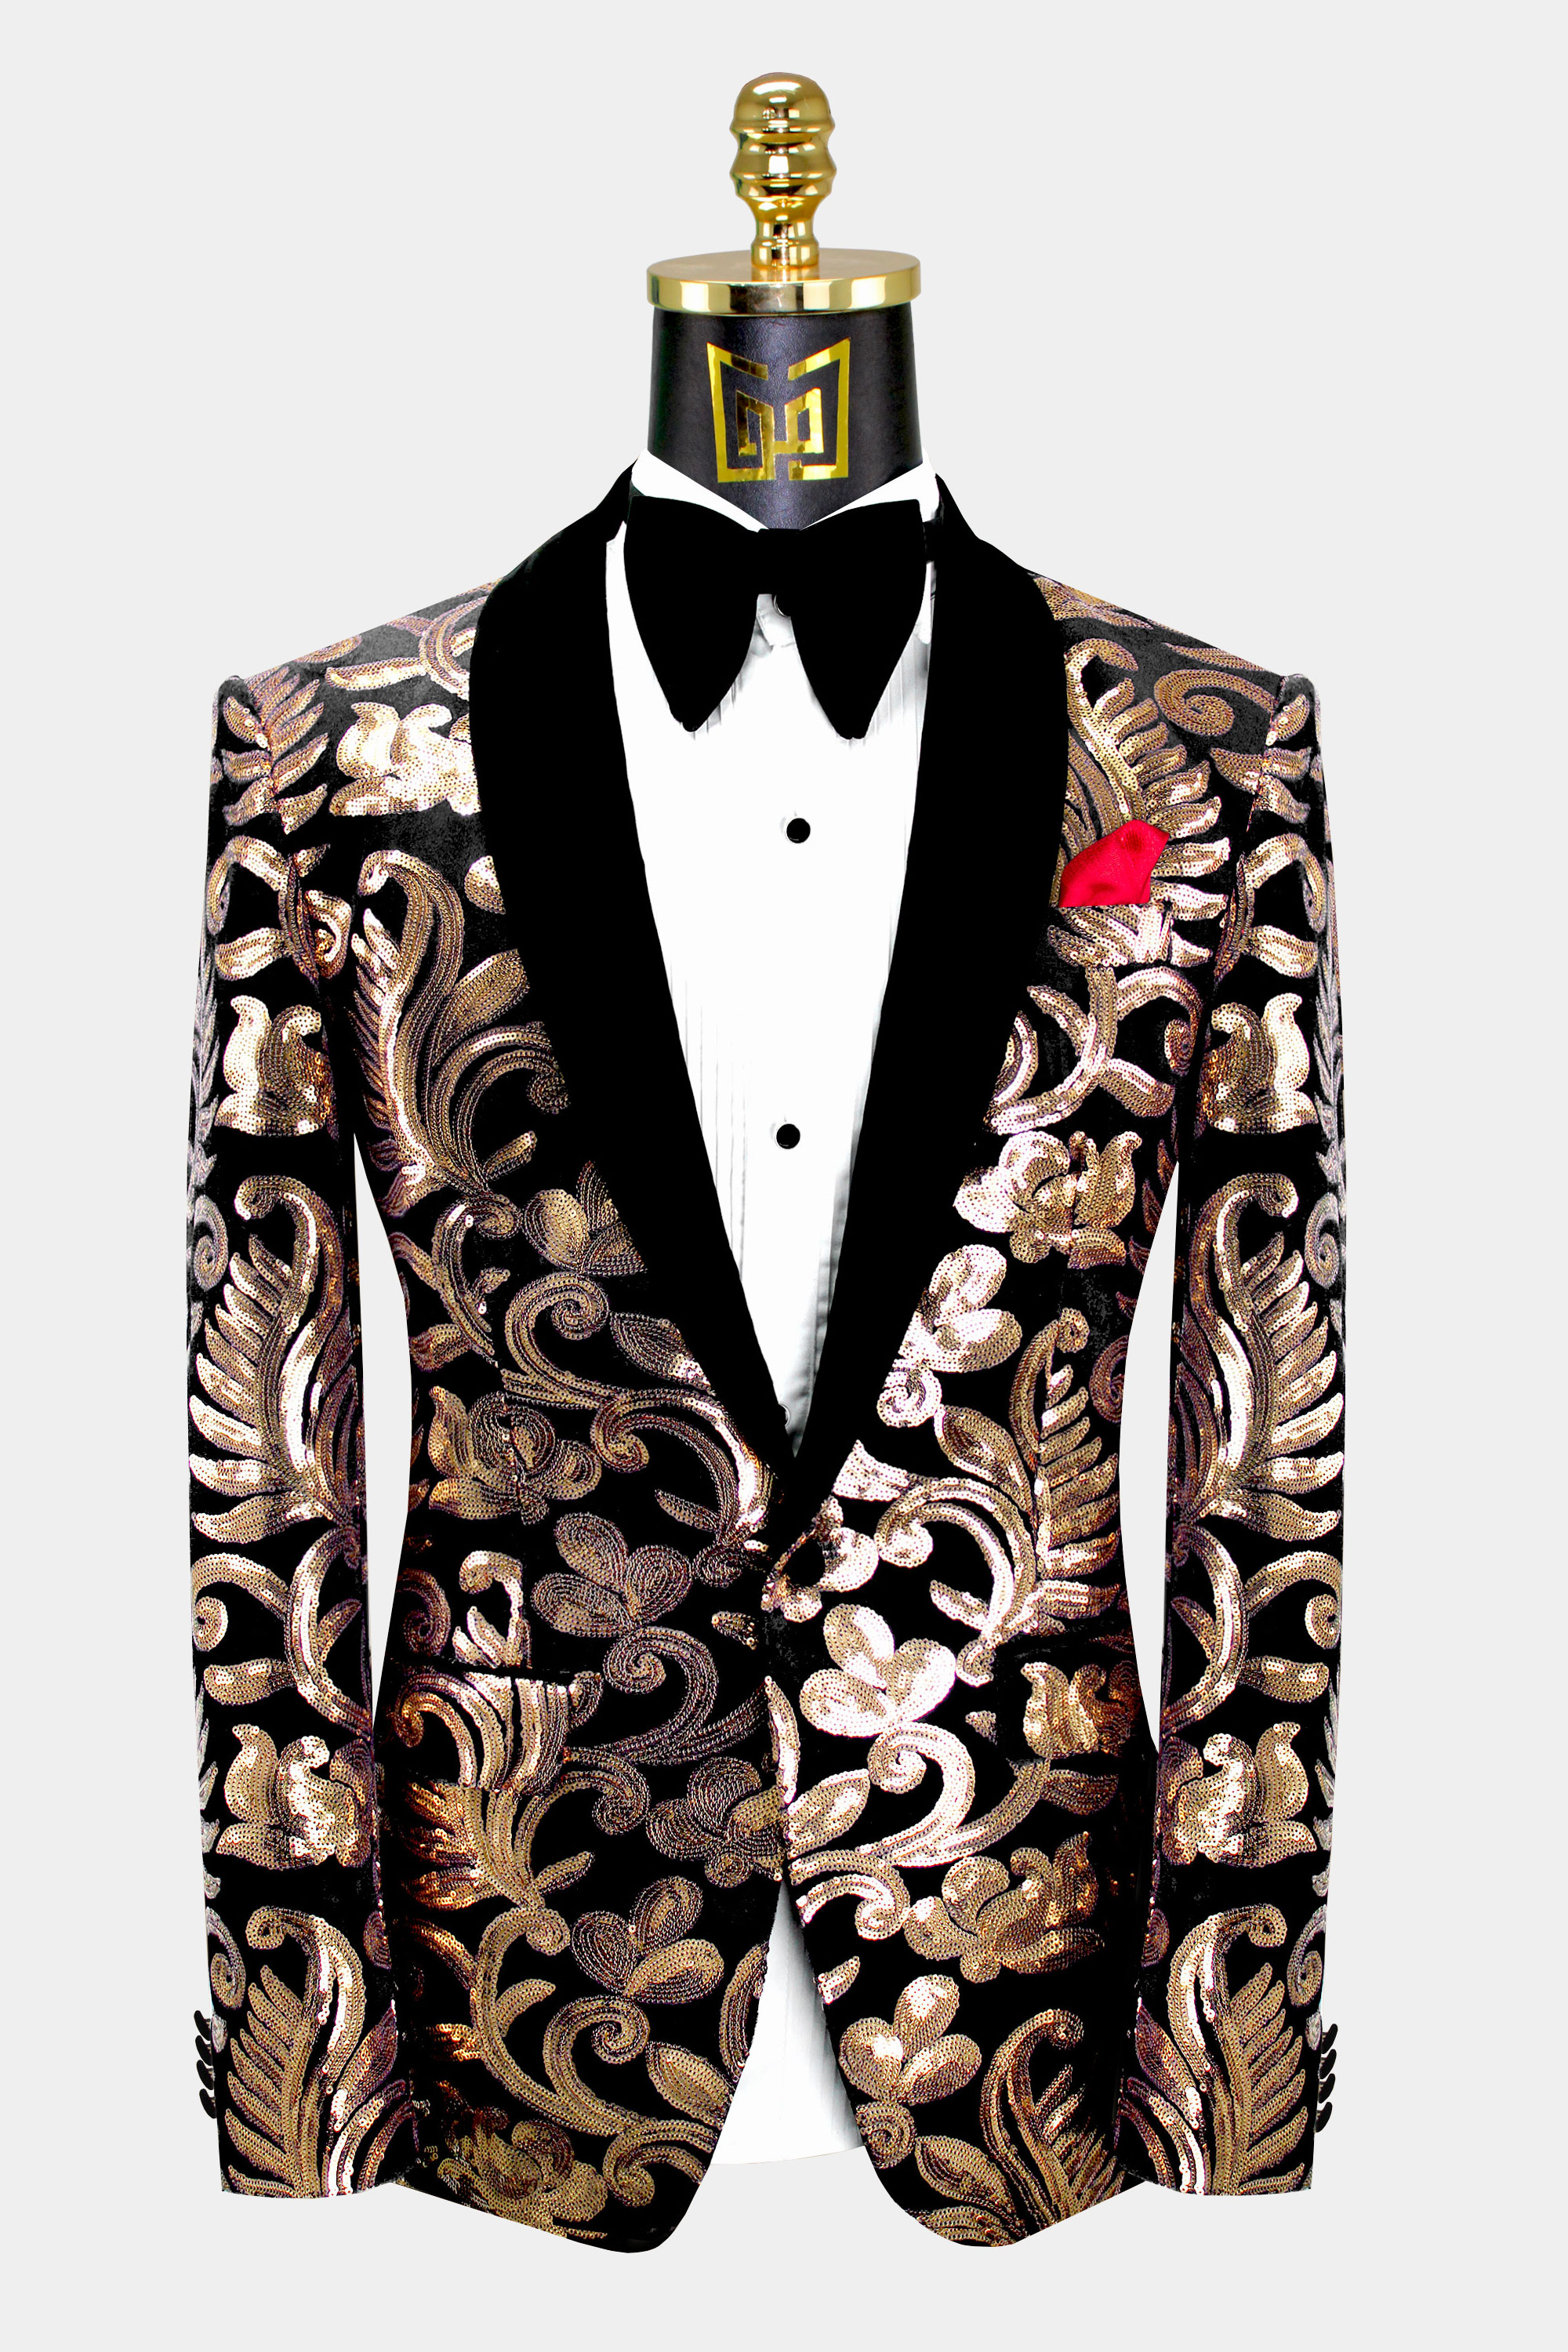 Gold Black Suit | vlr.eng.br